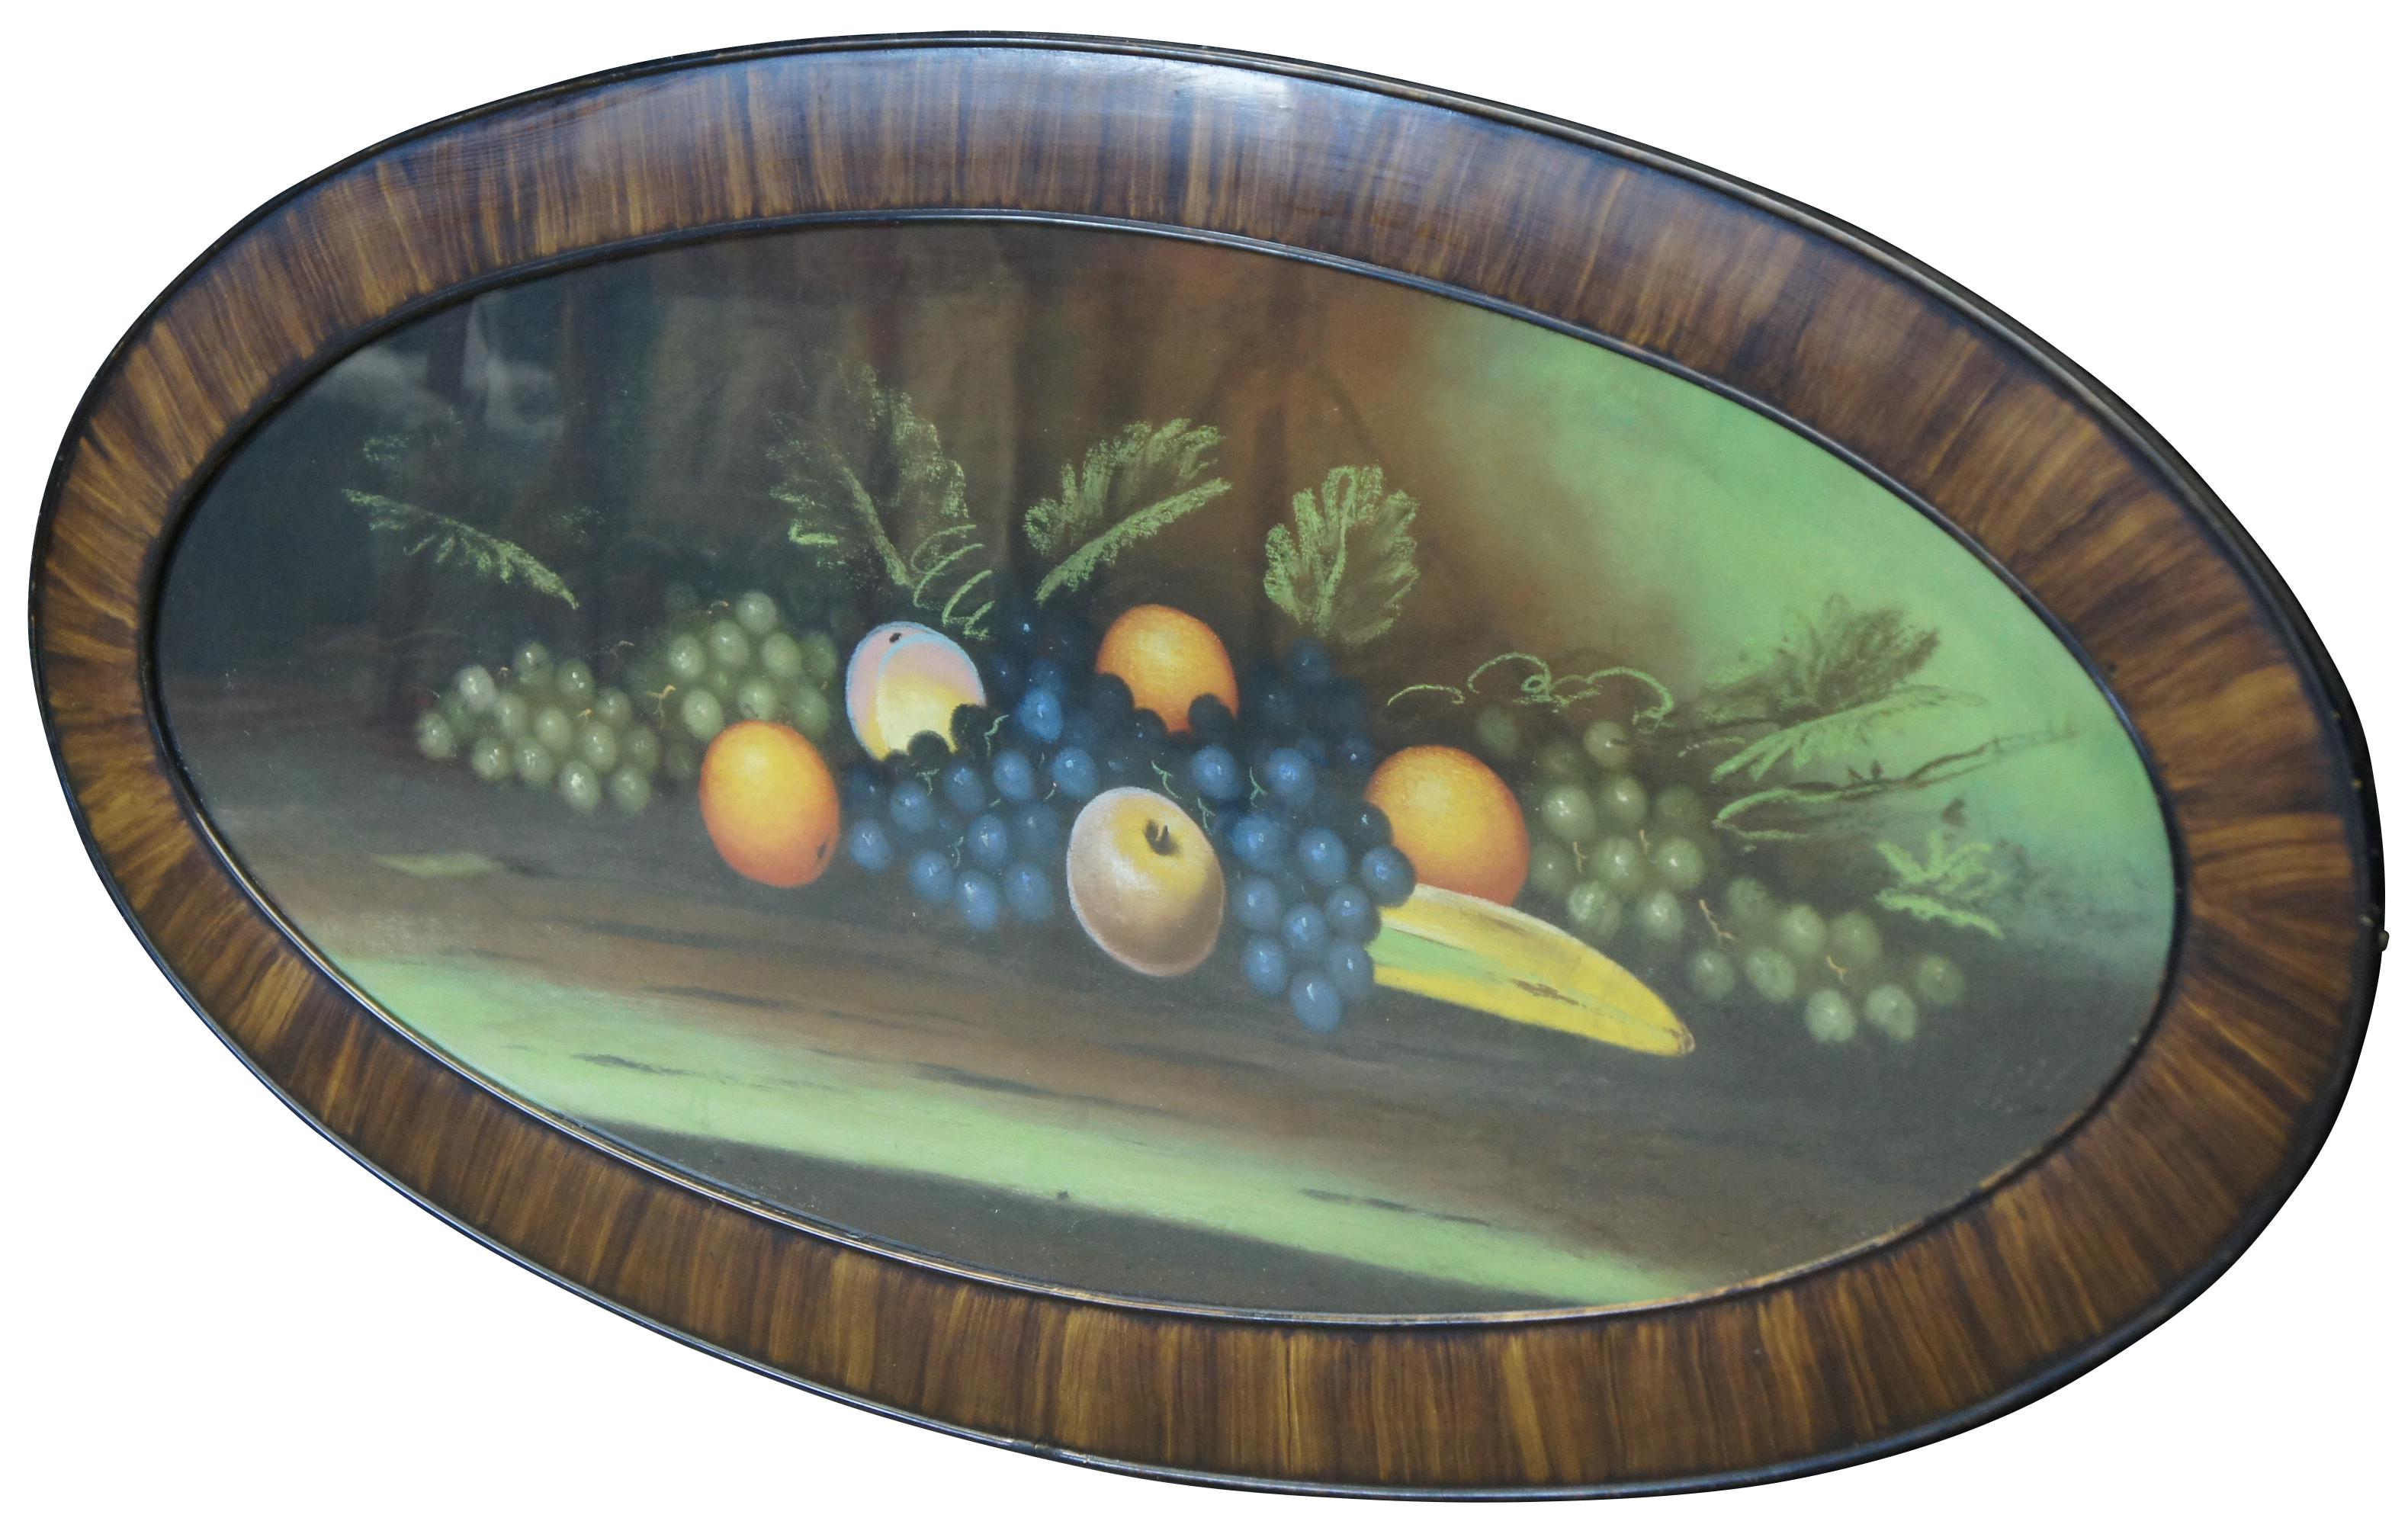 Große antike viktorianische Pastellmalerei, die ein Stillleben einer Vielzahl von Früchten zeigt, in einem ovalen Rahmen mit Holzmaserung.

Maße: 45.2